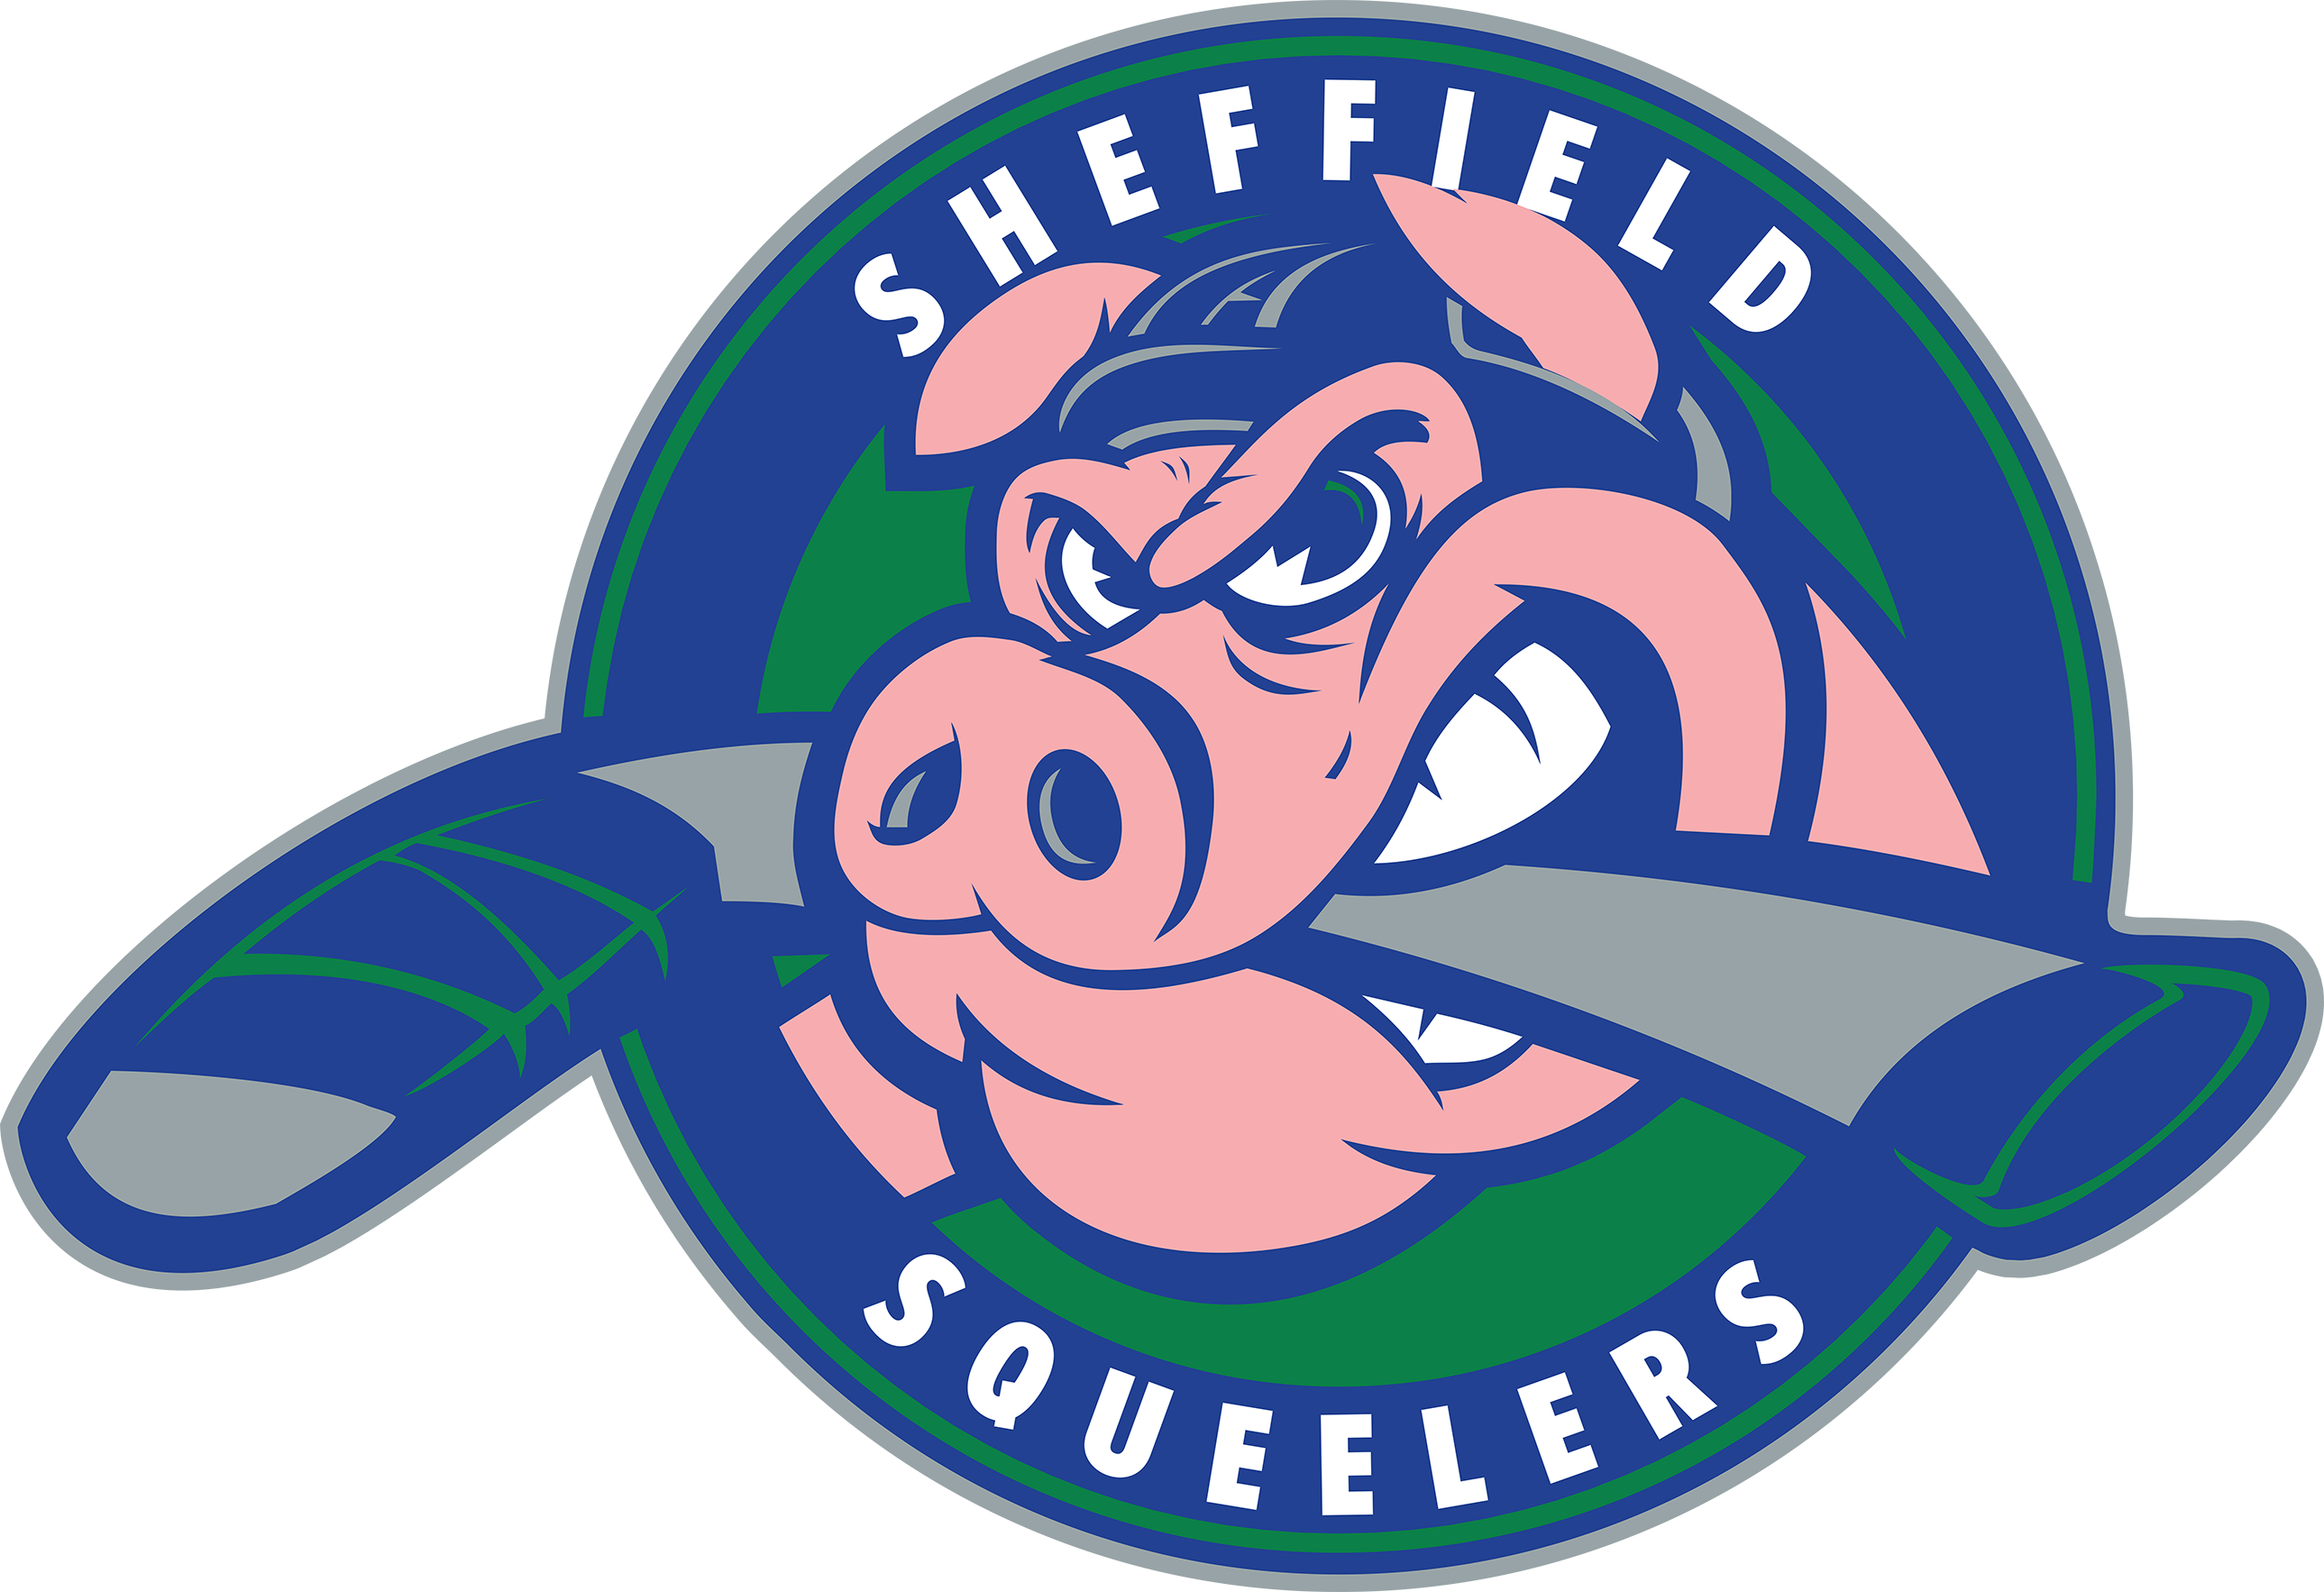 Sheffield Squeelers Ice Hockey Club